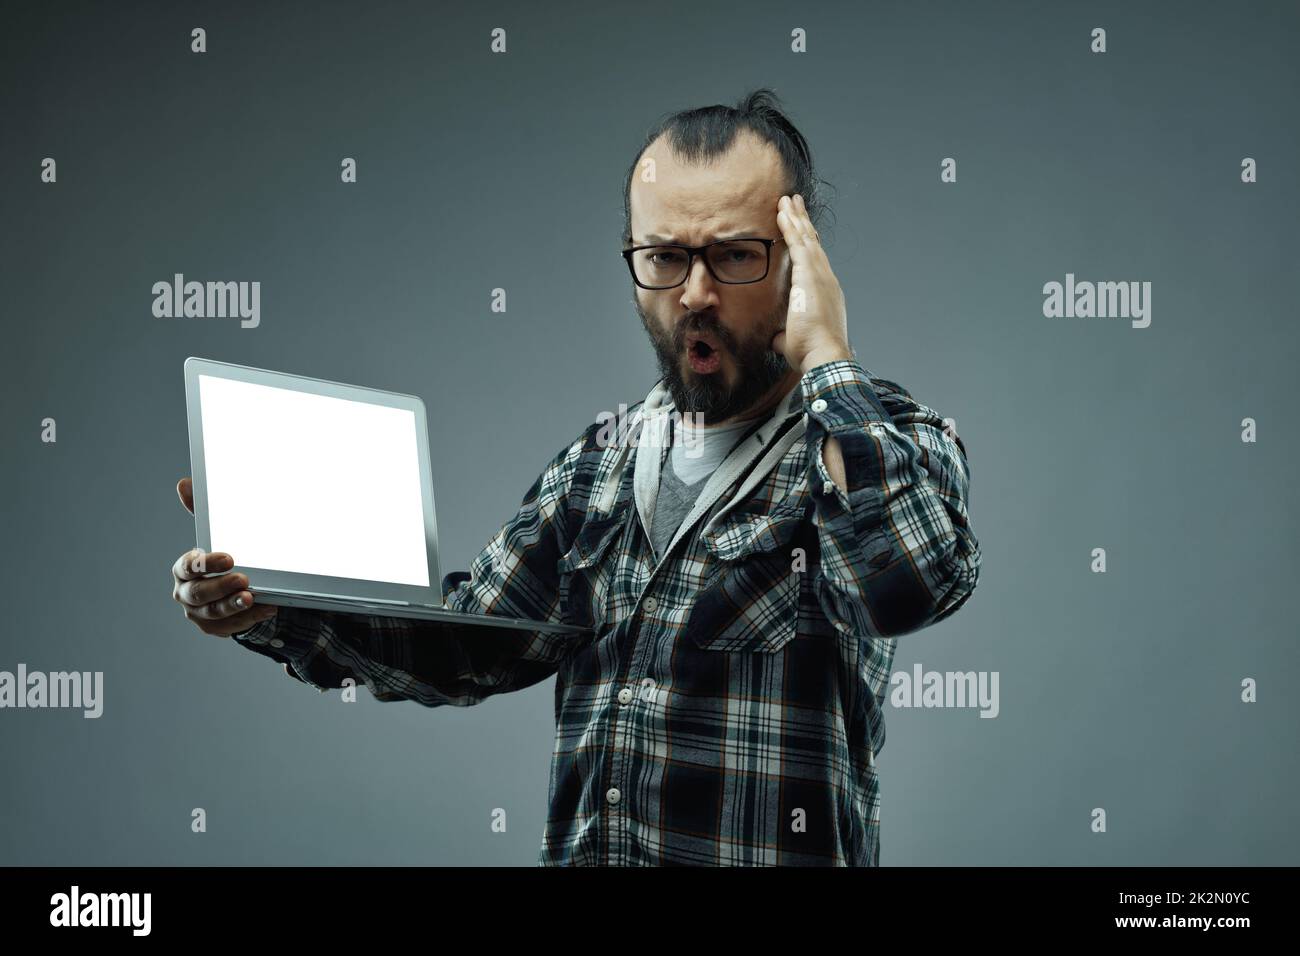 Hombre con una expresión facial asombrada mientras sostiene un ordenador portátil Foto de stock